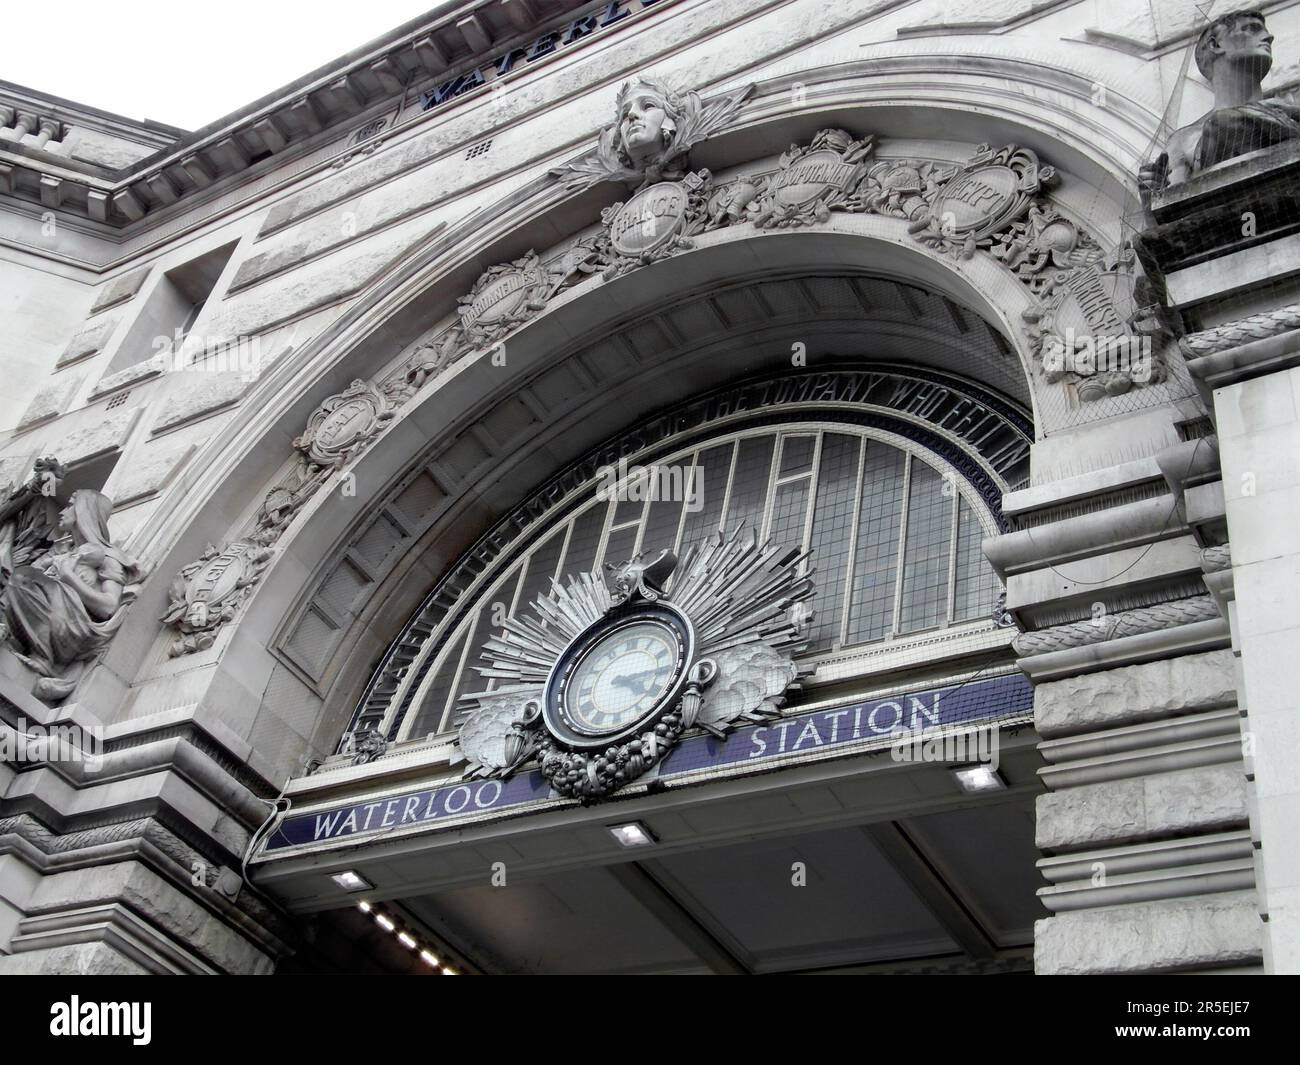 LONDRES, ROYAUME-UNI - 23 JUILLET 2011 : entrée à la gare de Waterloo à Londres, Royaume-Uni. C'est le plus grand terminal ferroviaire de Londres et le métro St Banque D'Images